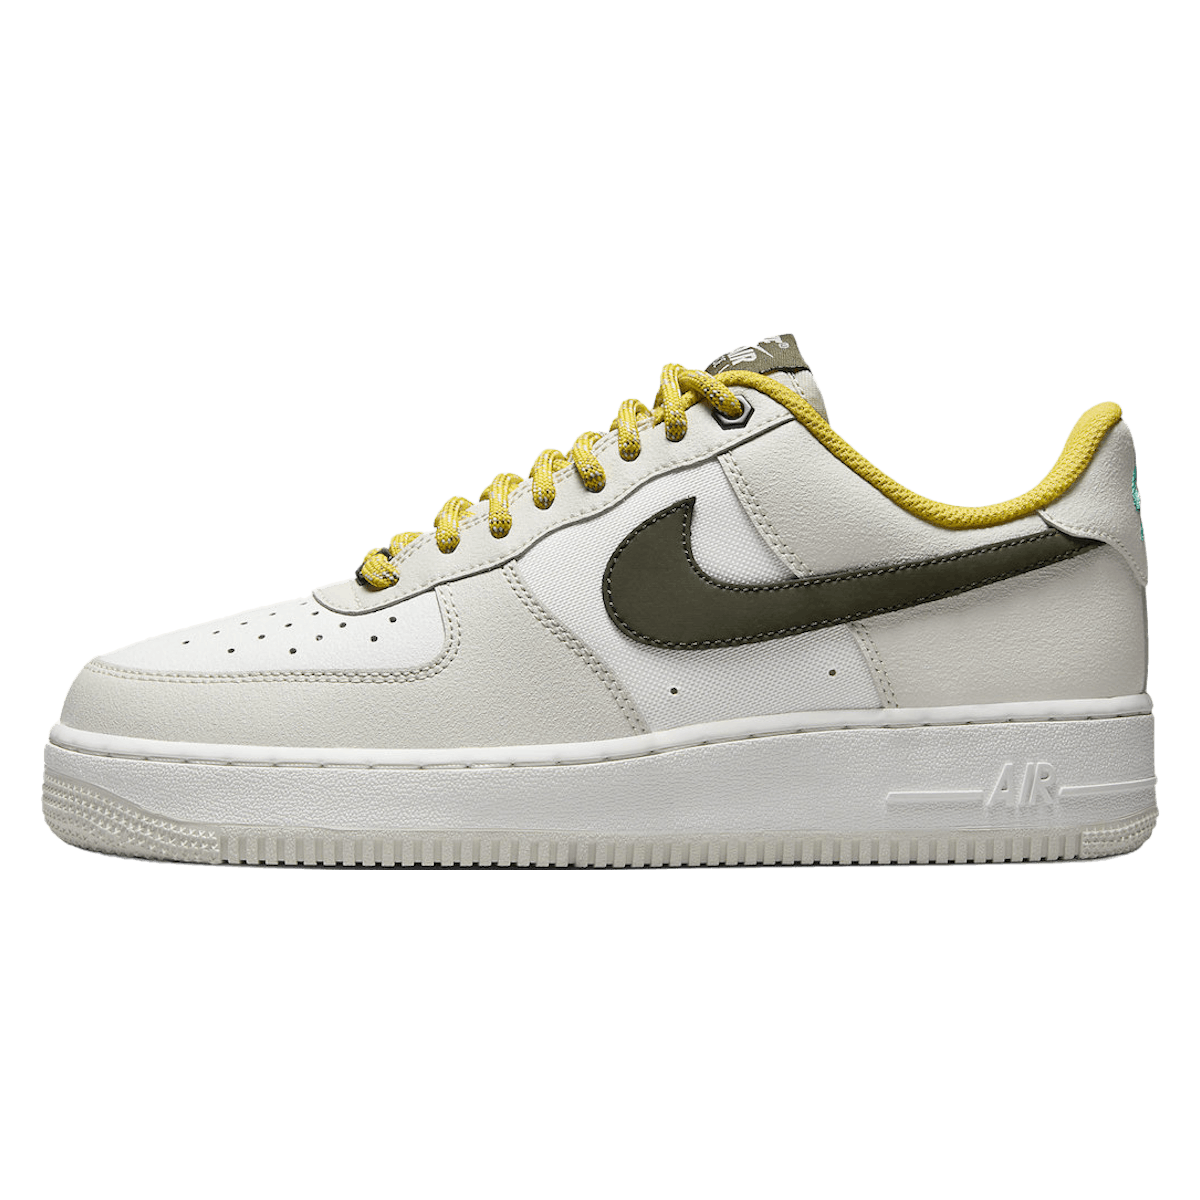 Nike Air Force 1 Low Premium